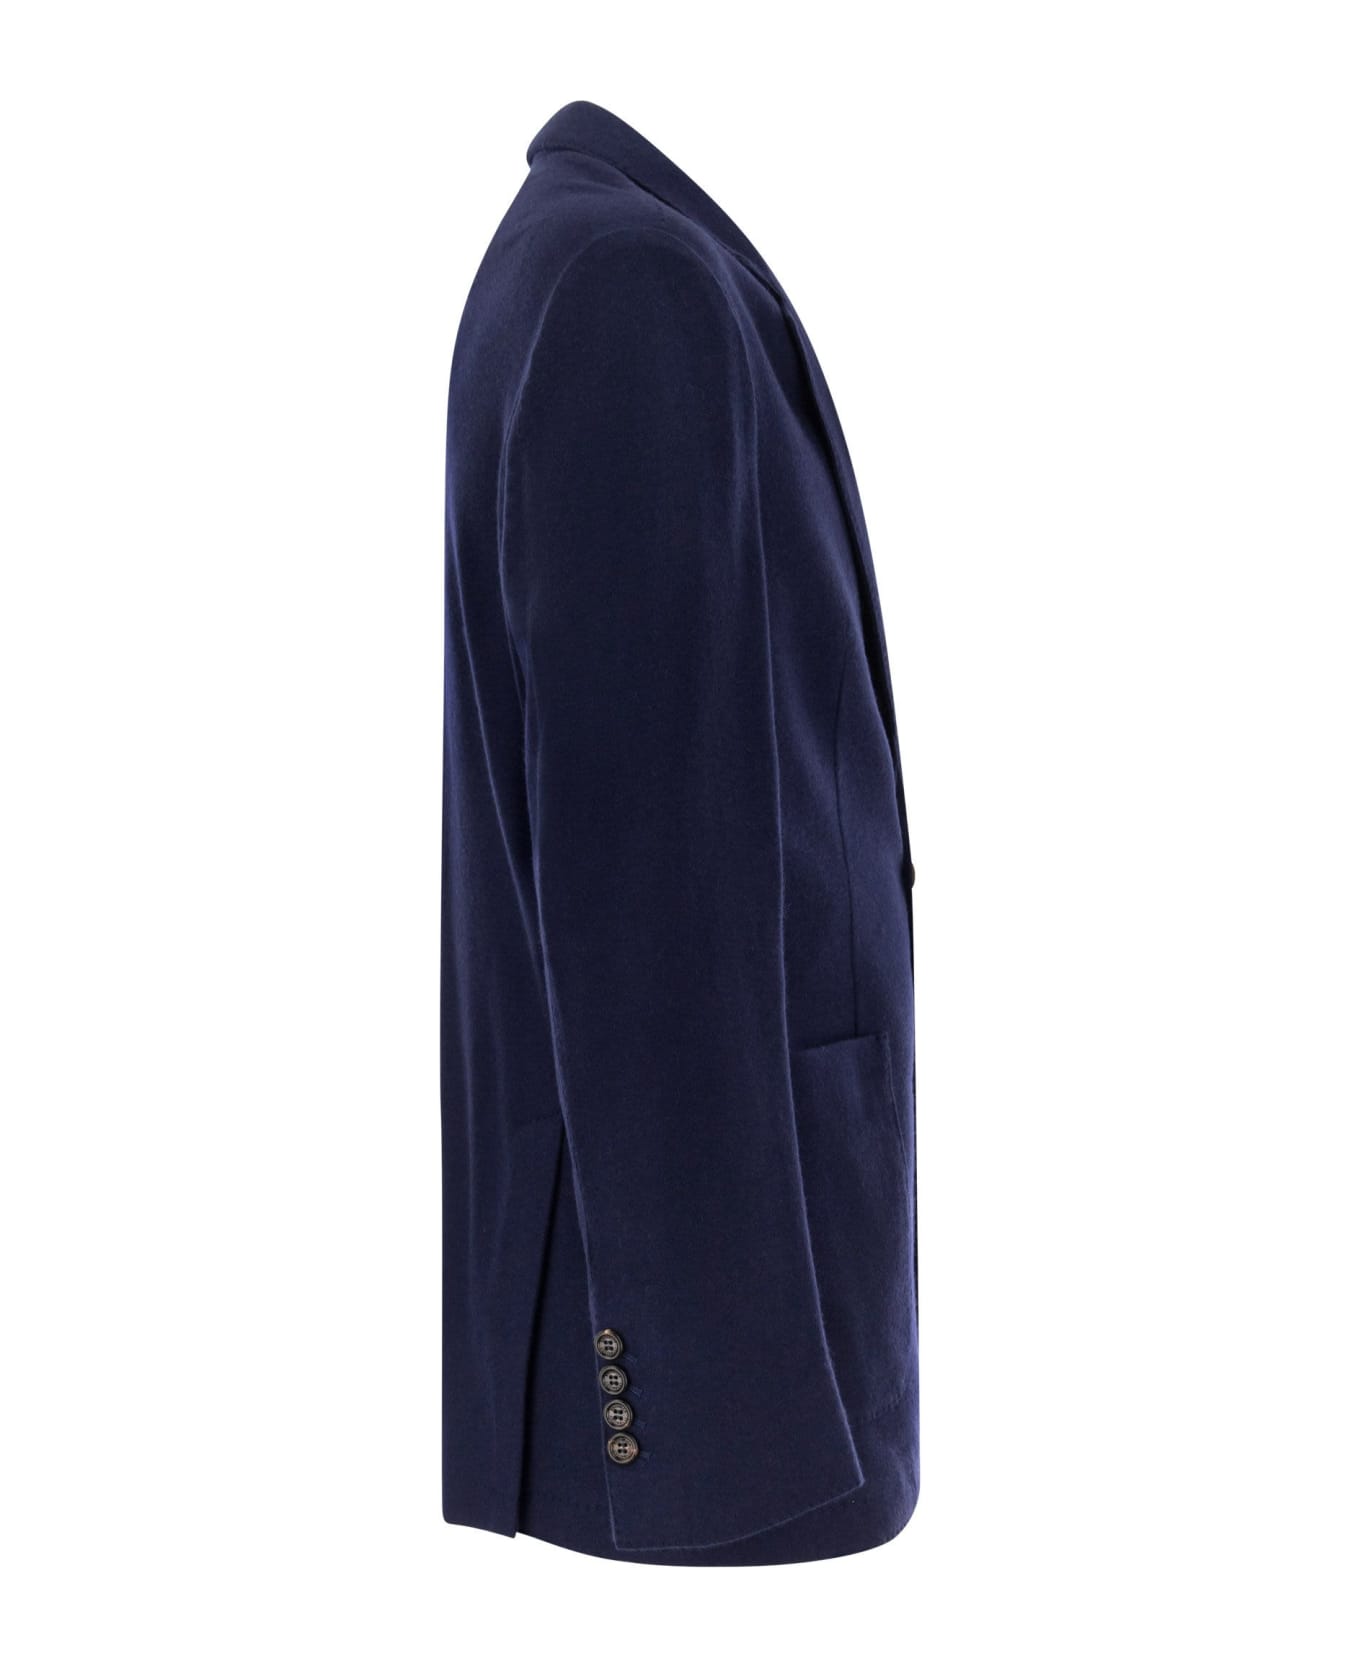 Brunello Cucinelli Cashmere Jersey Blazer With Patch Pockets - Cobalt